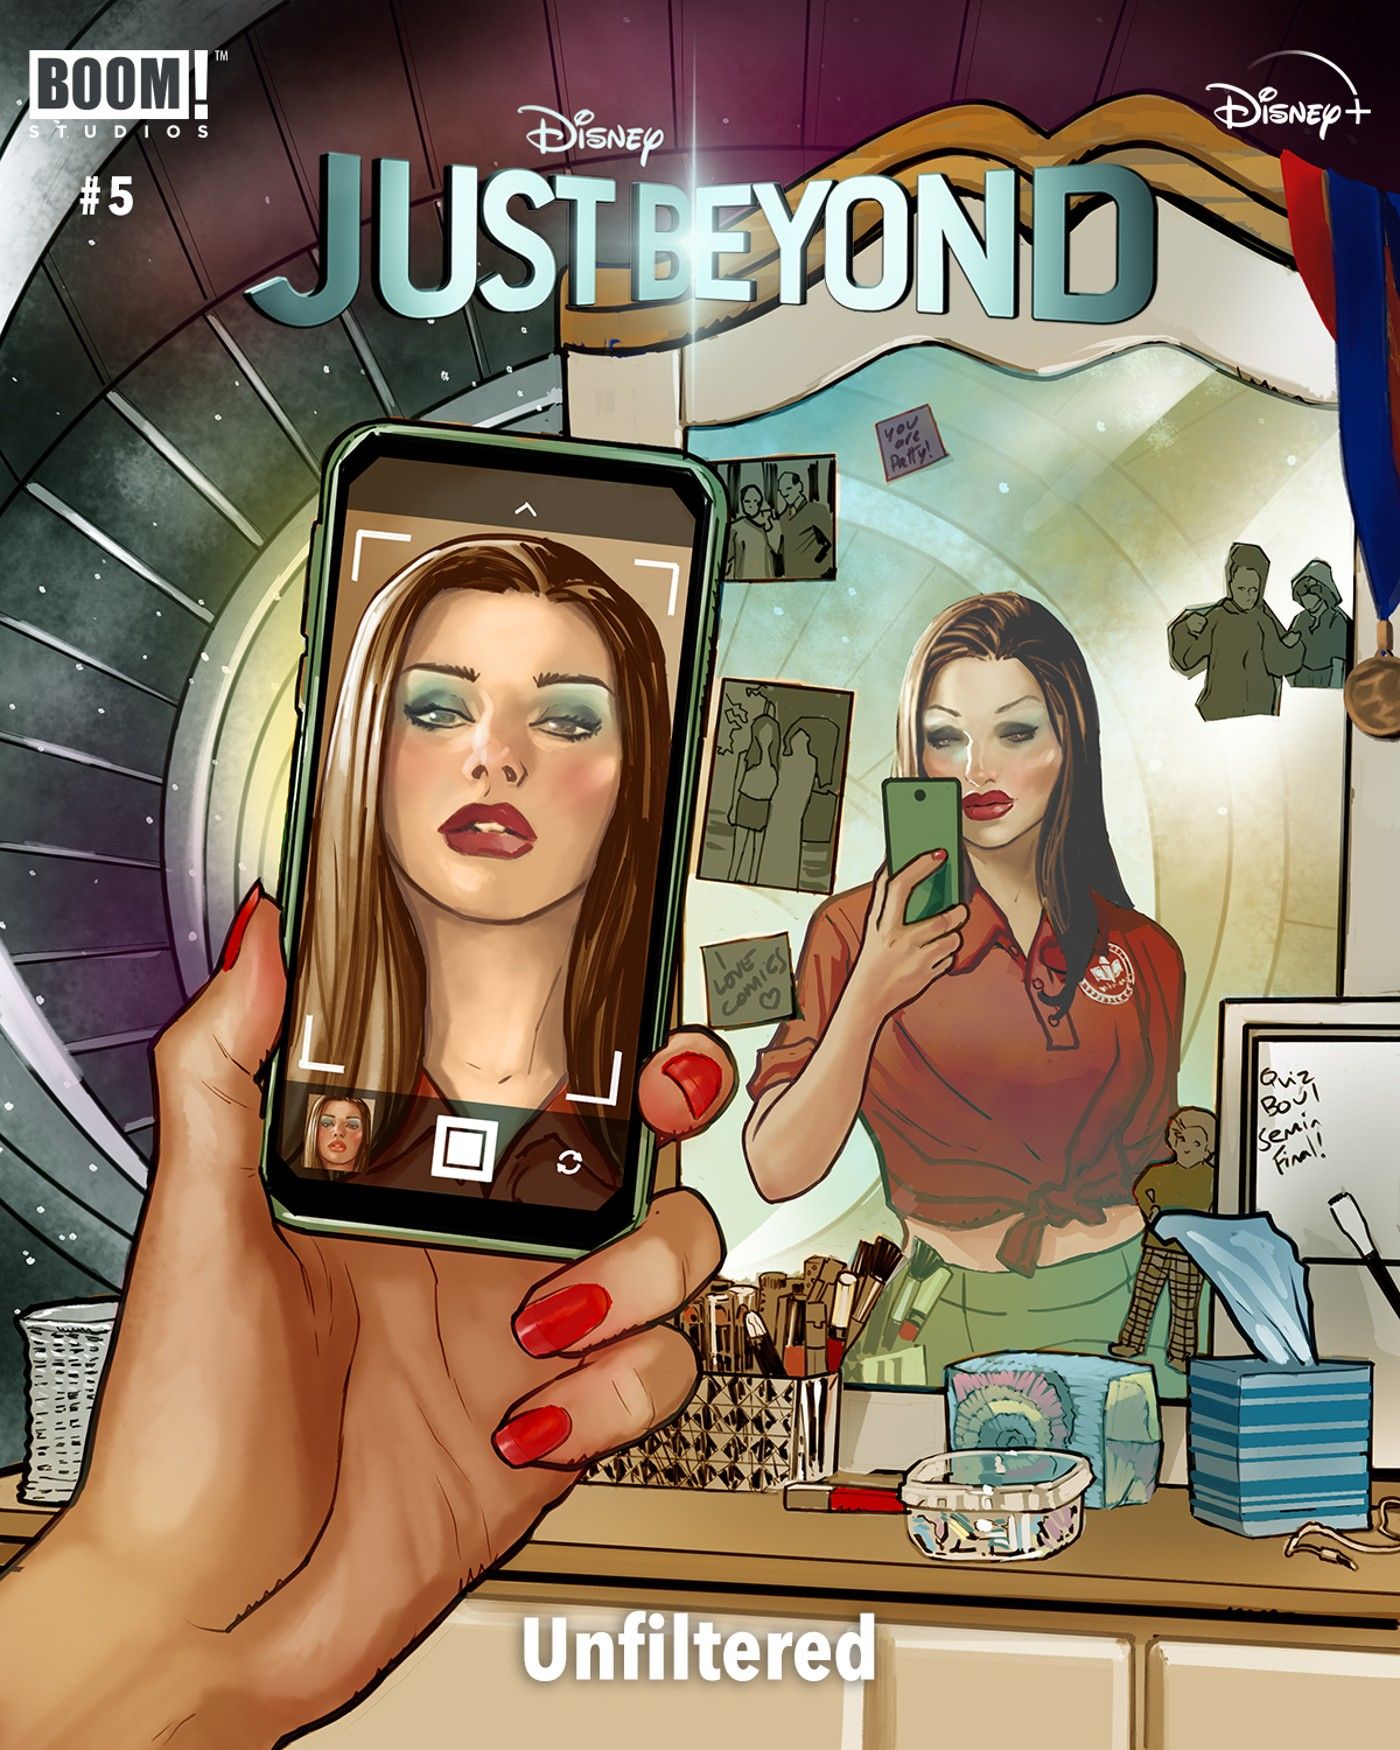 Boom Studios e Walt Disney Studios revelam arte promocional em quadrinhos de 'Just Beyond' 5